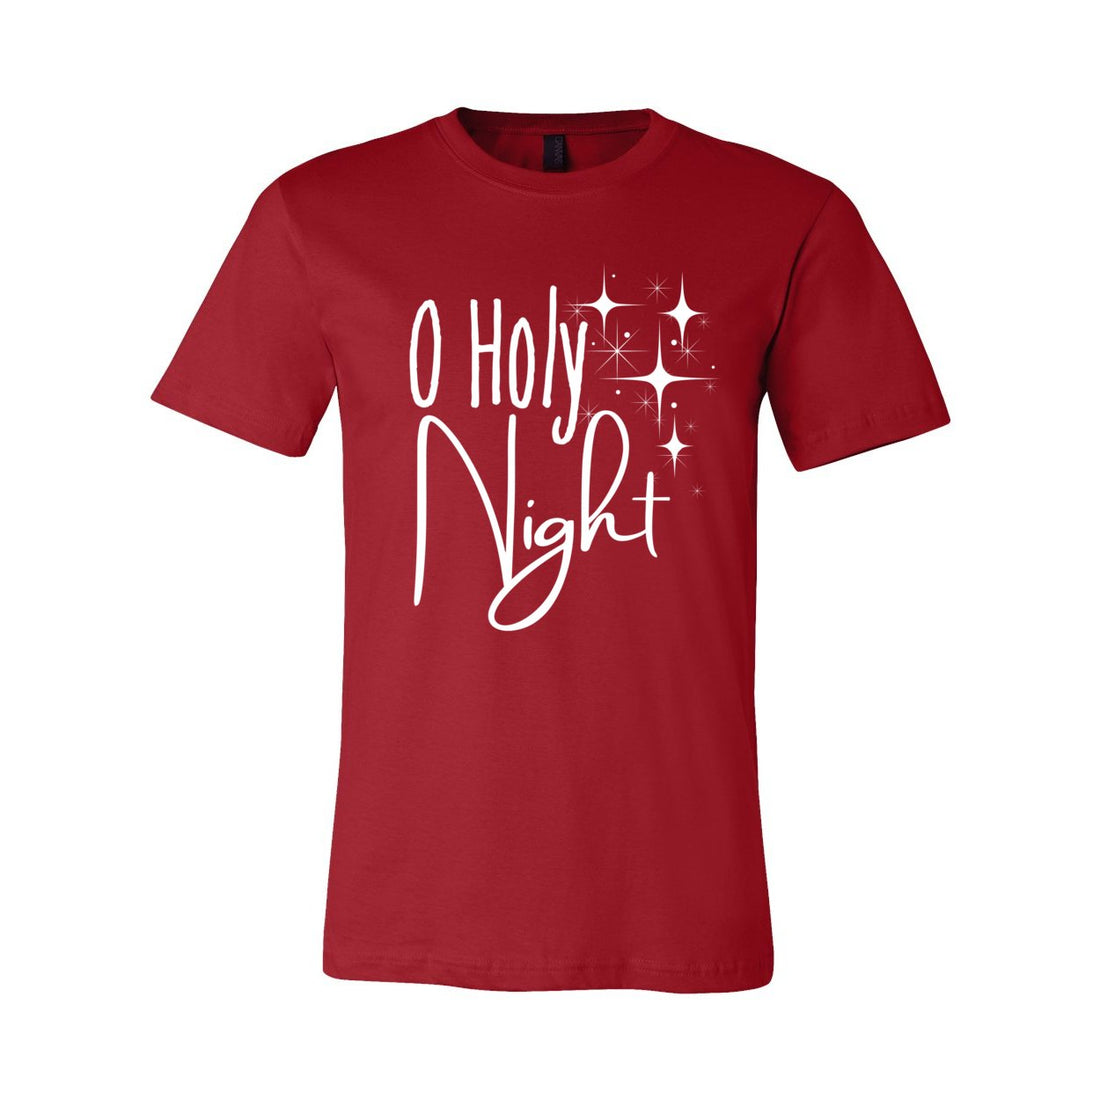 O Holy Night - T-Shirts - Positively Sassy - O Holy Night